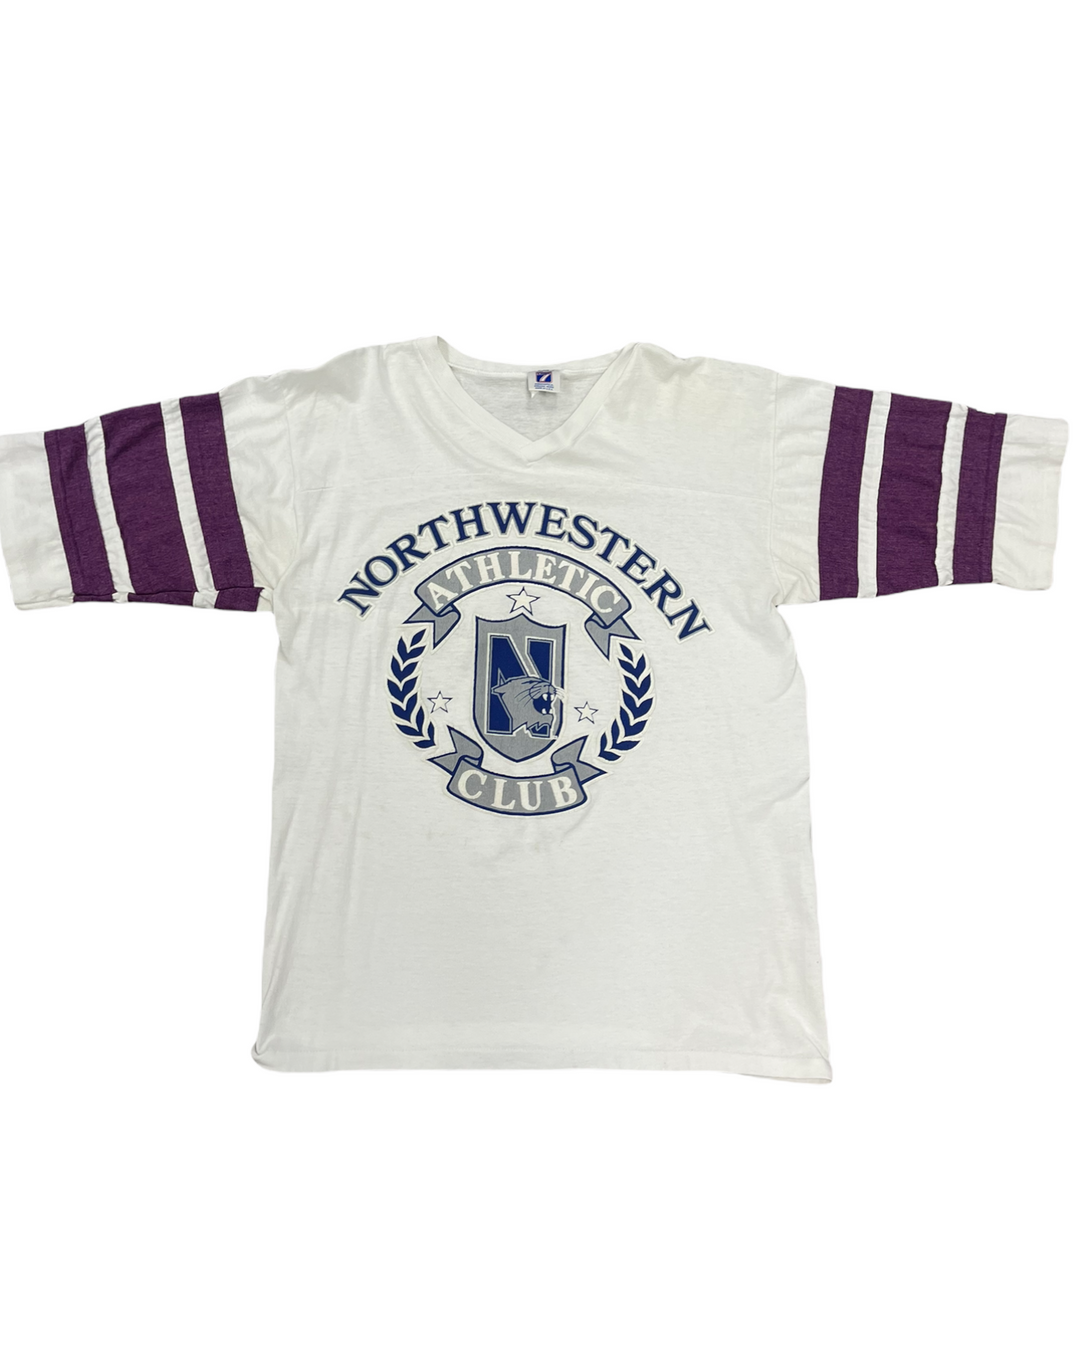 Northwestern Vintage T-Shirt